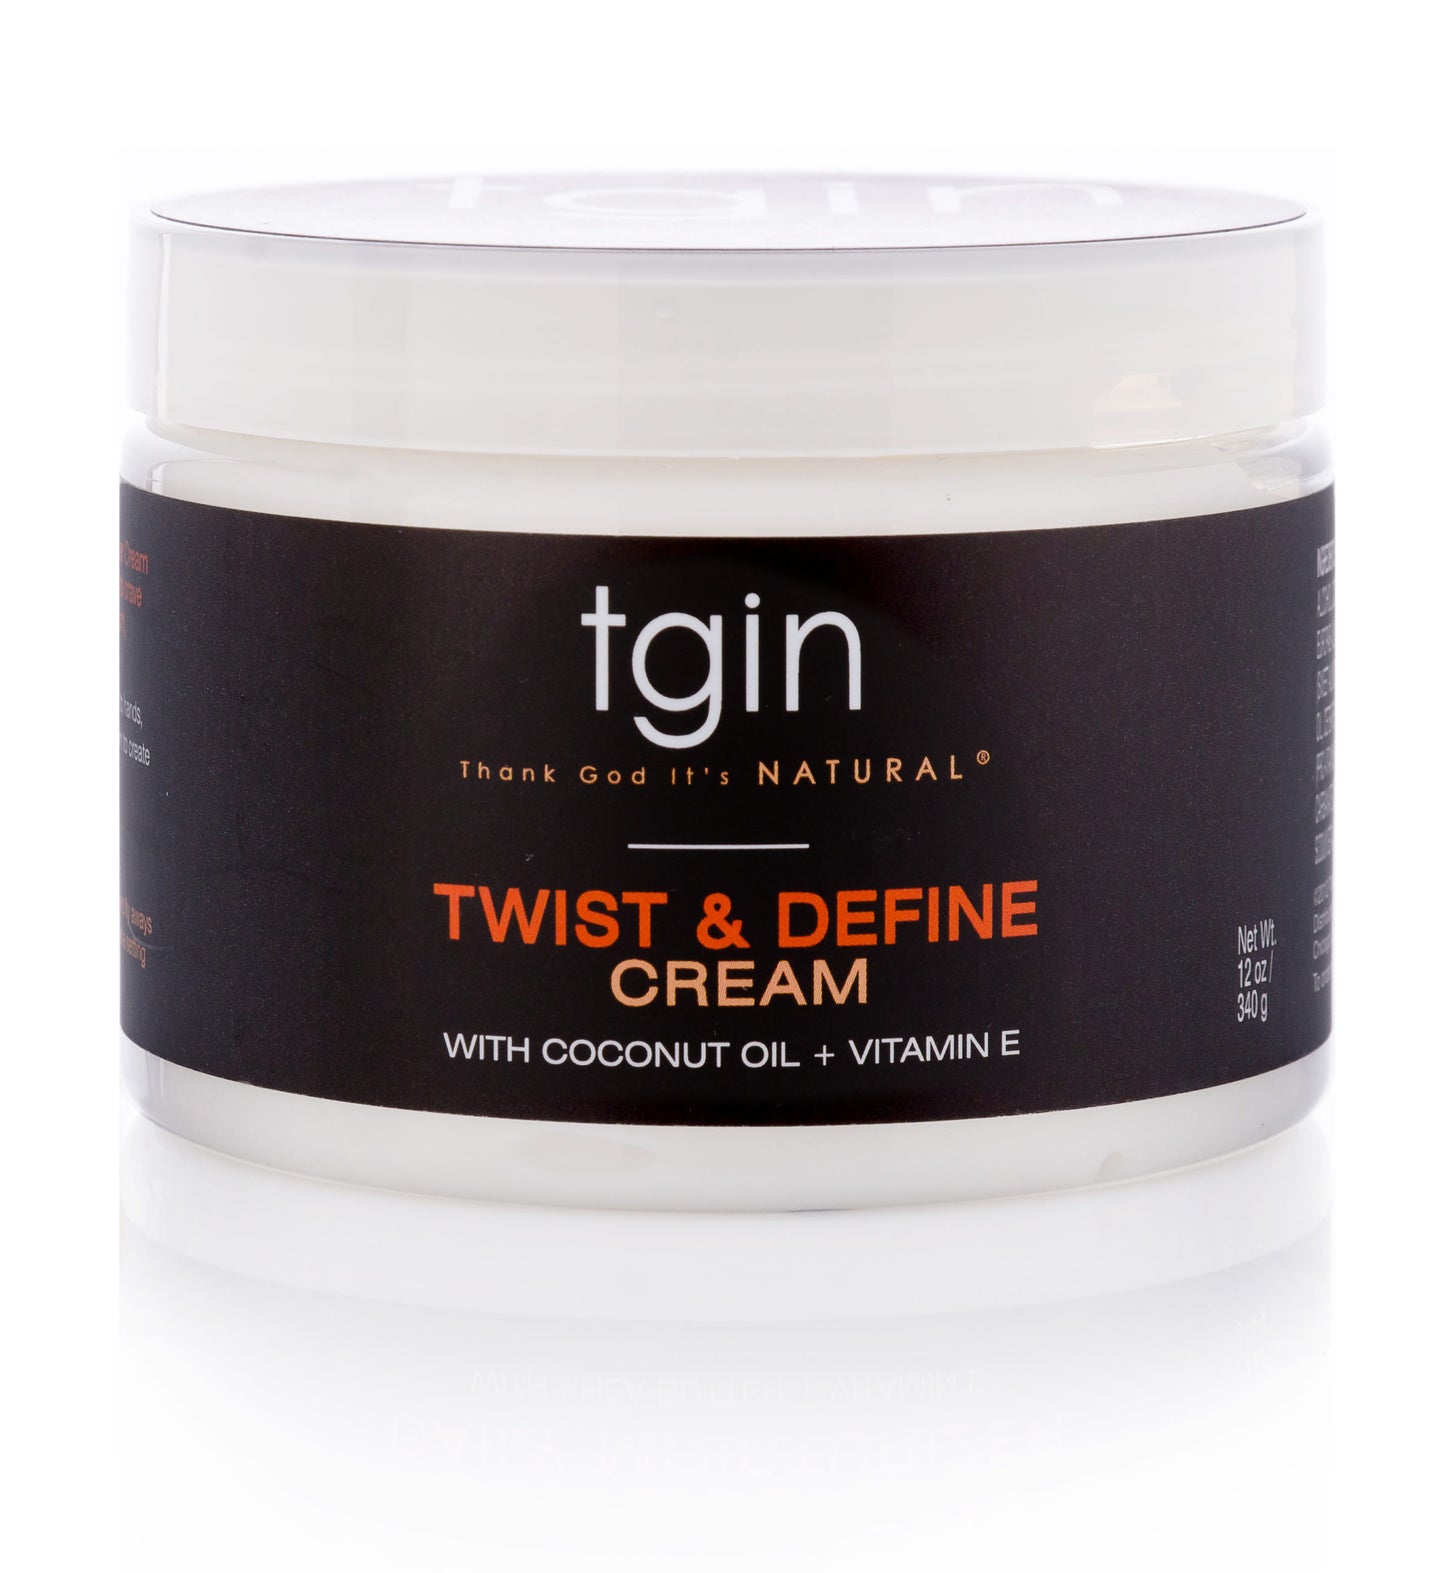 tgin Twist and Define Cream - 12oz